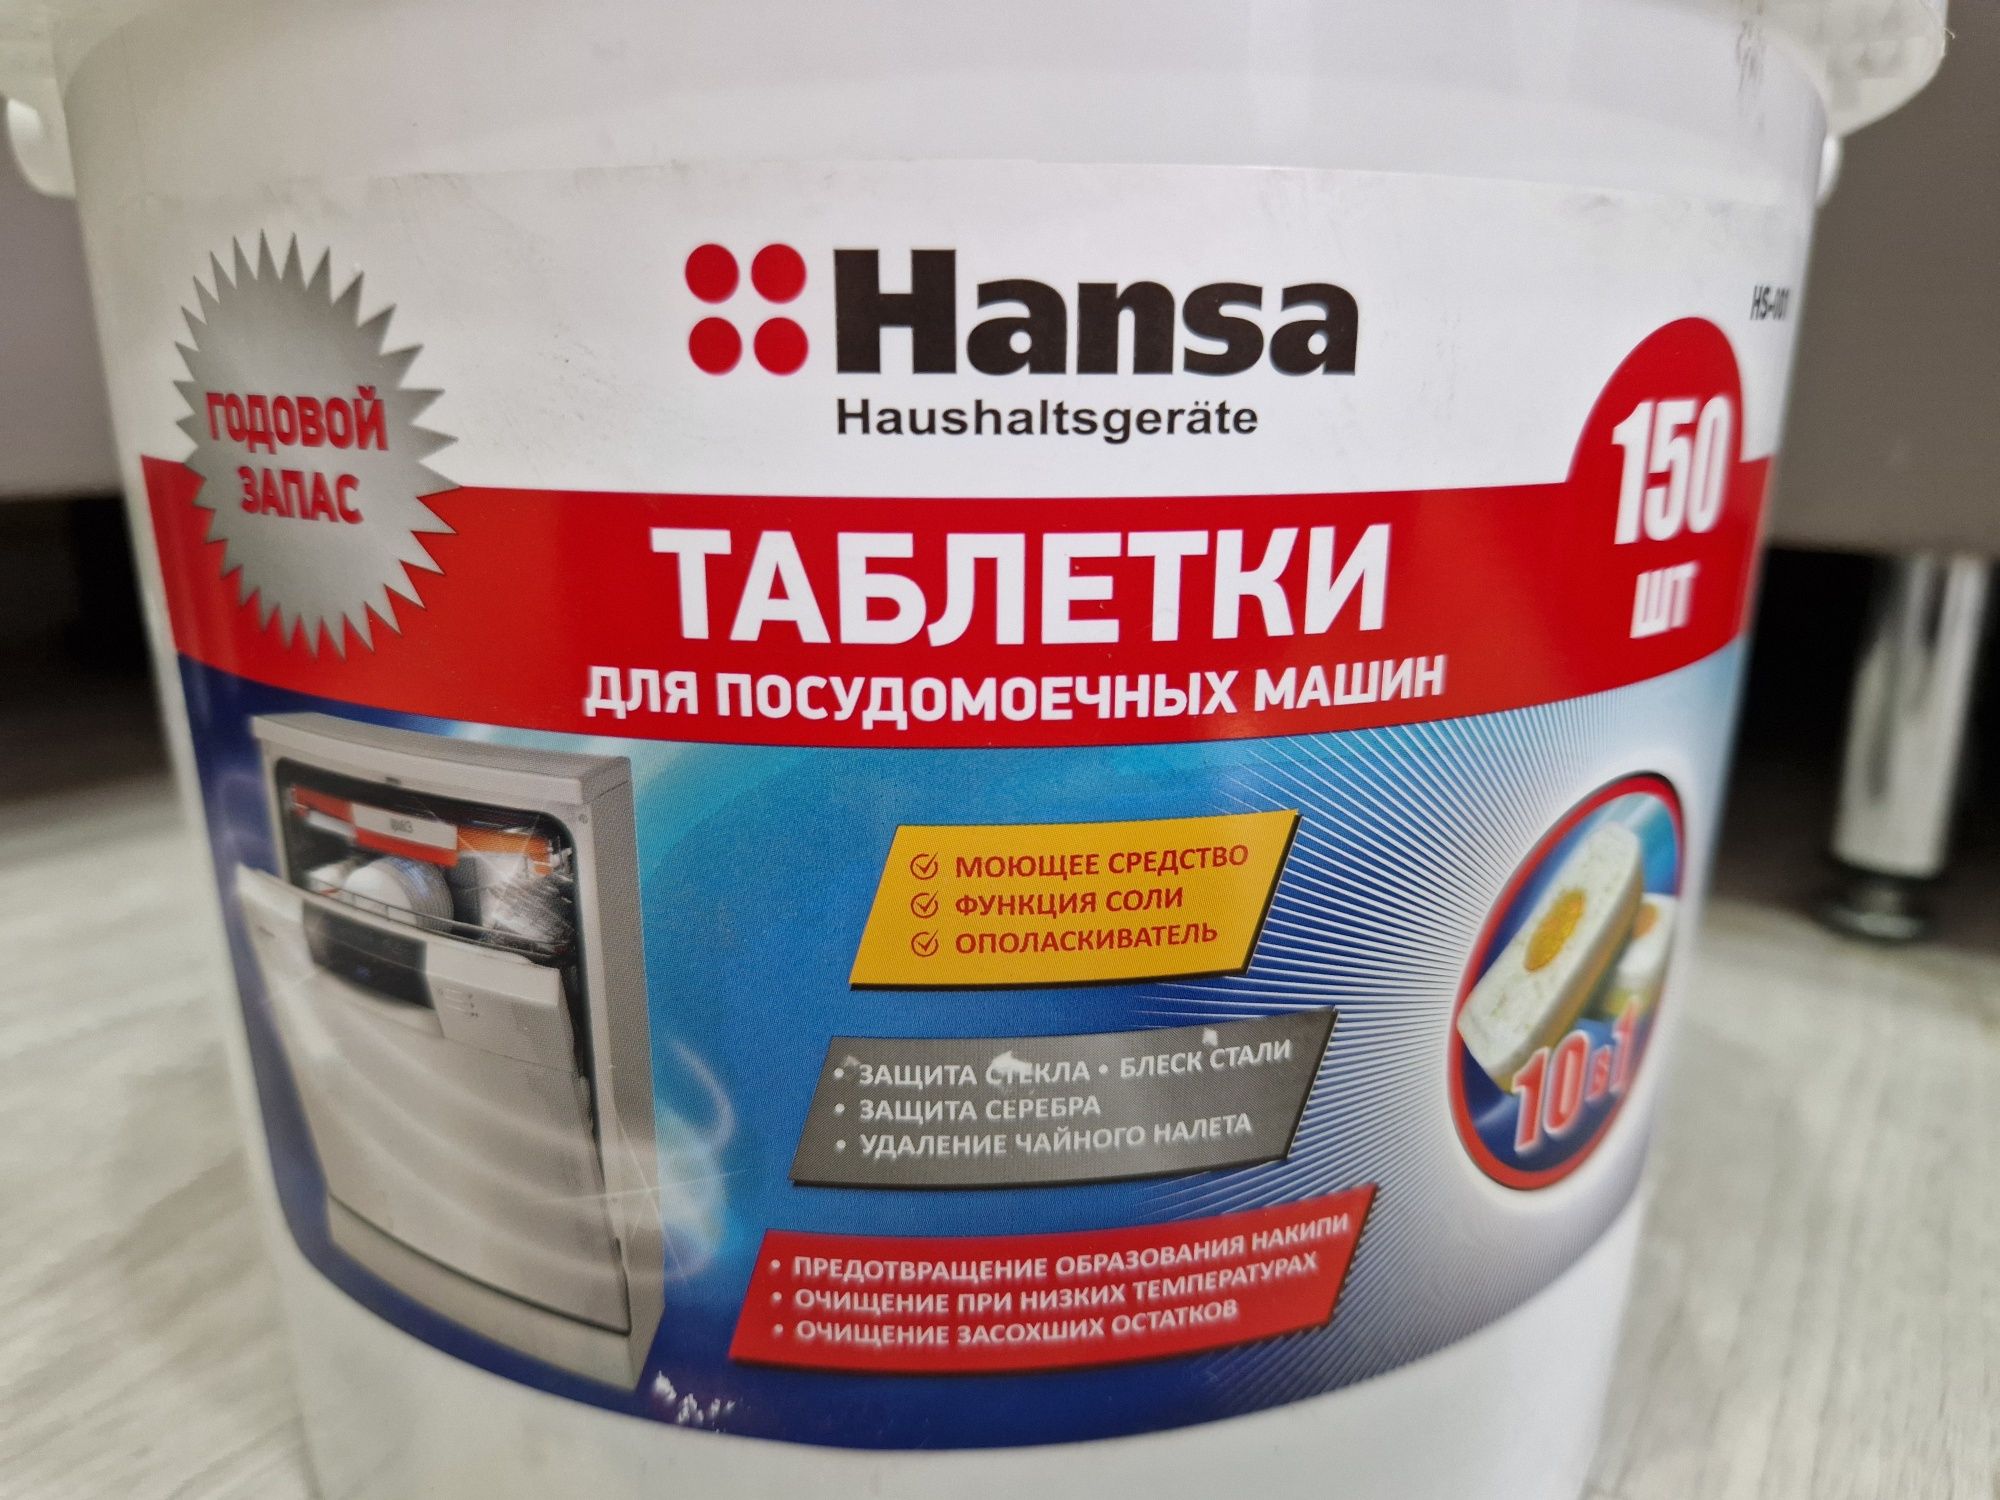 Продам таблетки для посудомоечноый машины Hansa 150шт новые